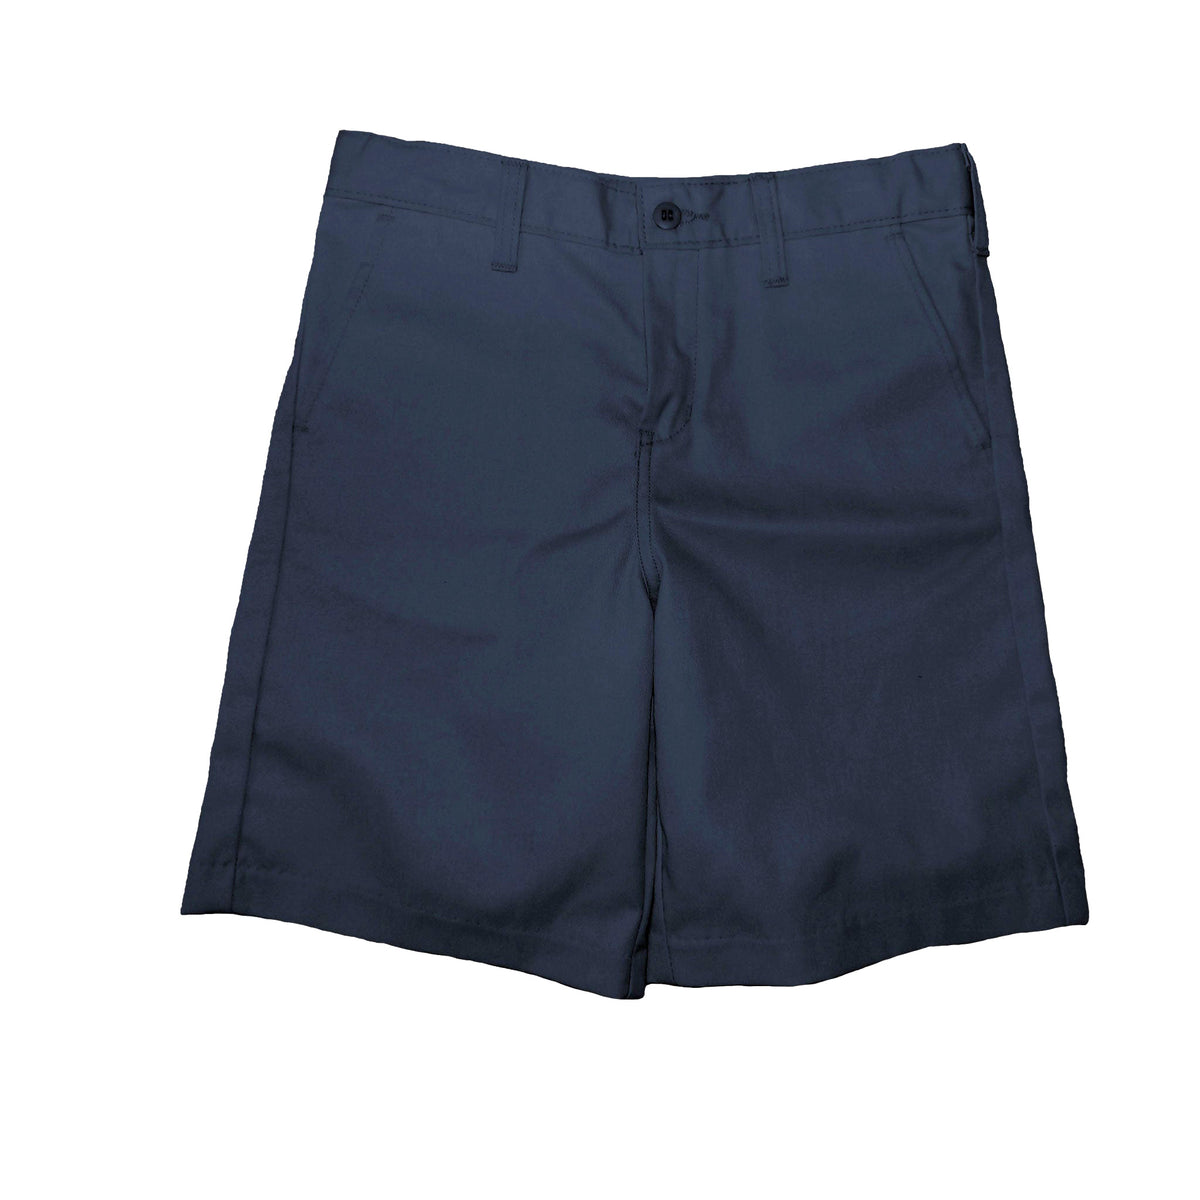 1776 Pantalones cortos azul marino con parte delantera plana para niños y hombres